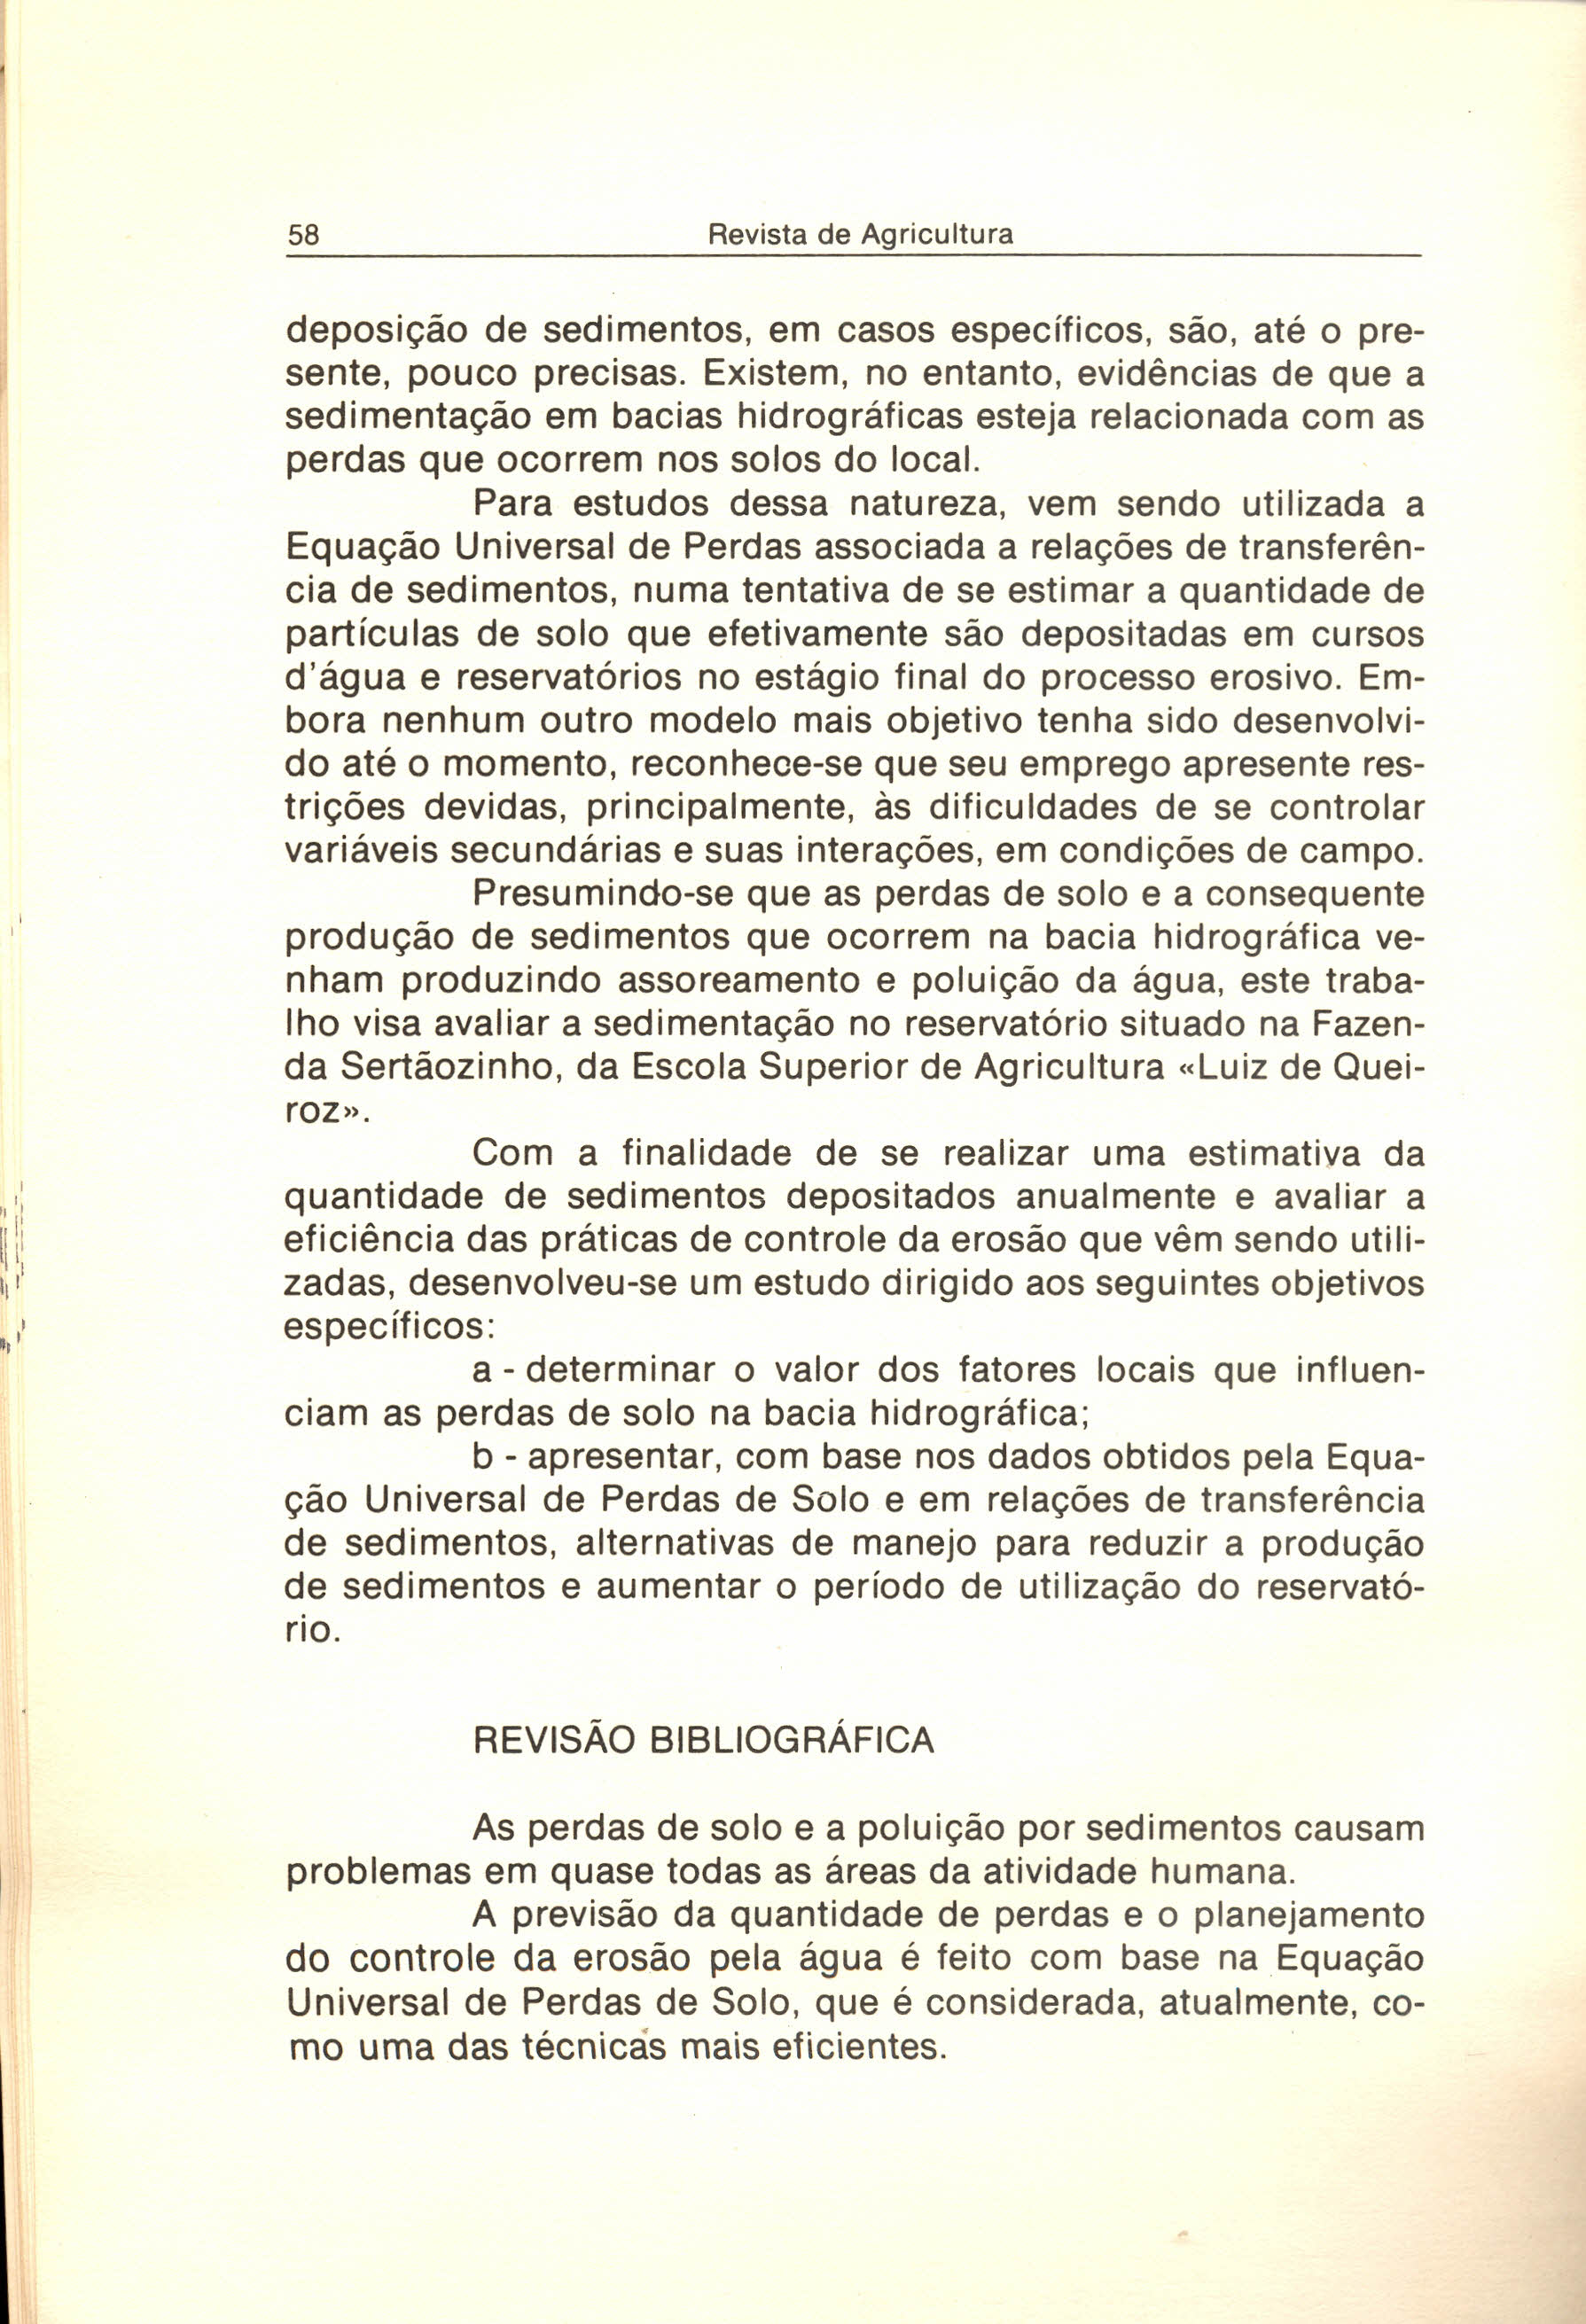 58 Revista de Agricultura,,' deposição de sedimentos, em casos específicos, são, até o presente, pouco precisas.